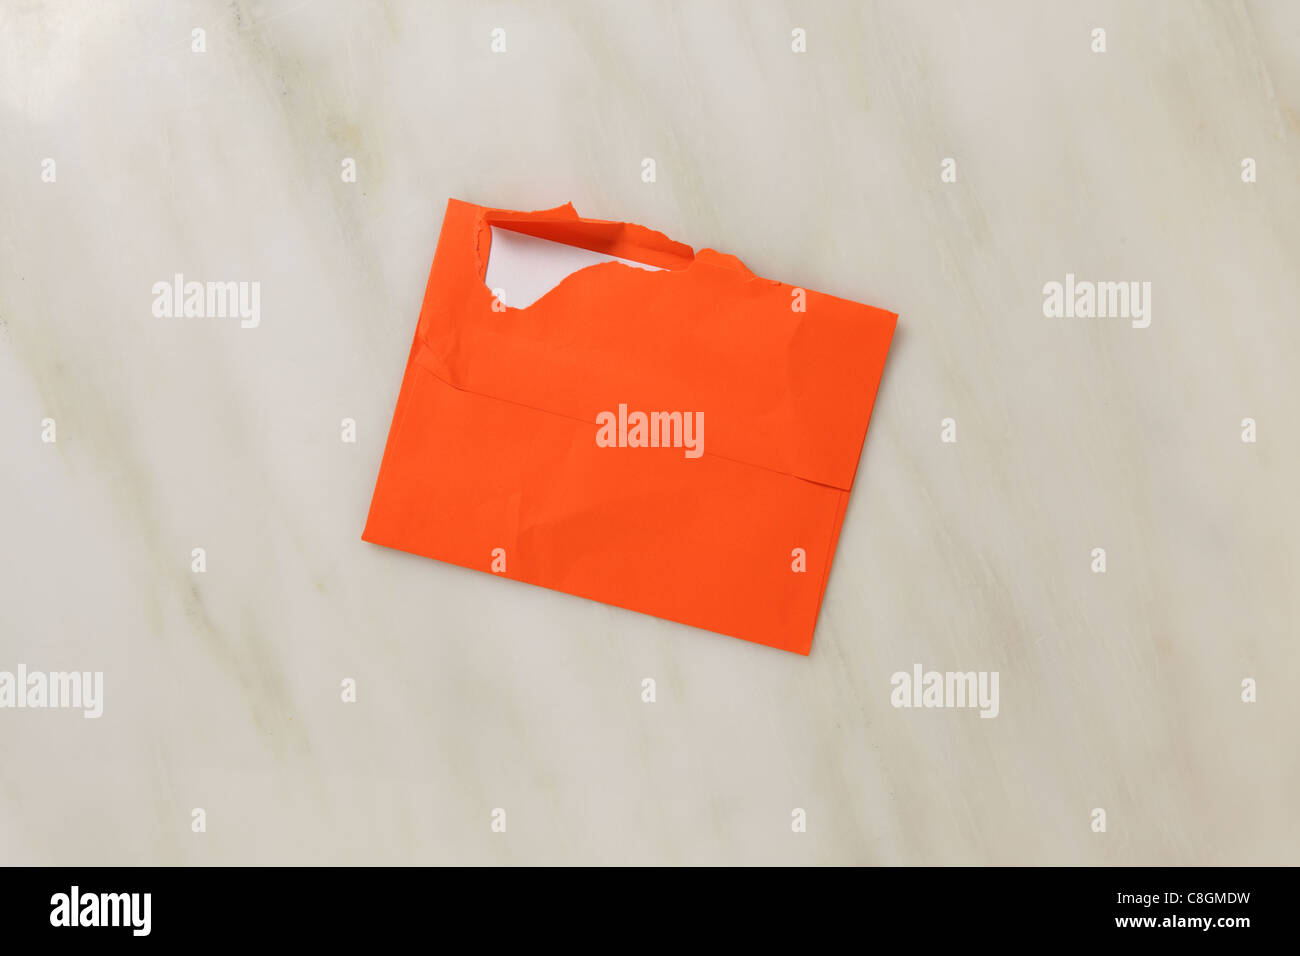 Un employé et légèrement déchiré l'enveloppe postal ouvert sur une surface en marbre. Enveloppe de couleur orange vif Banque D'Images